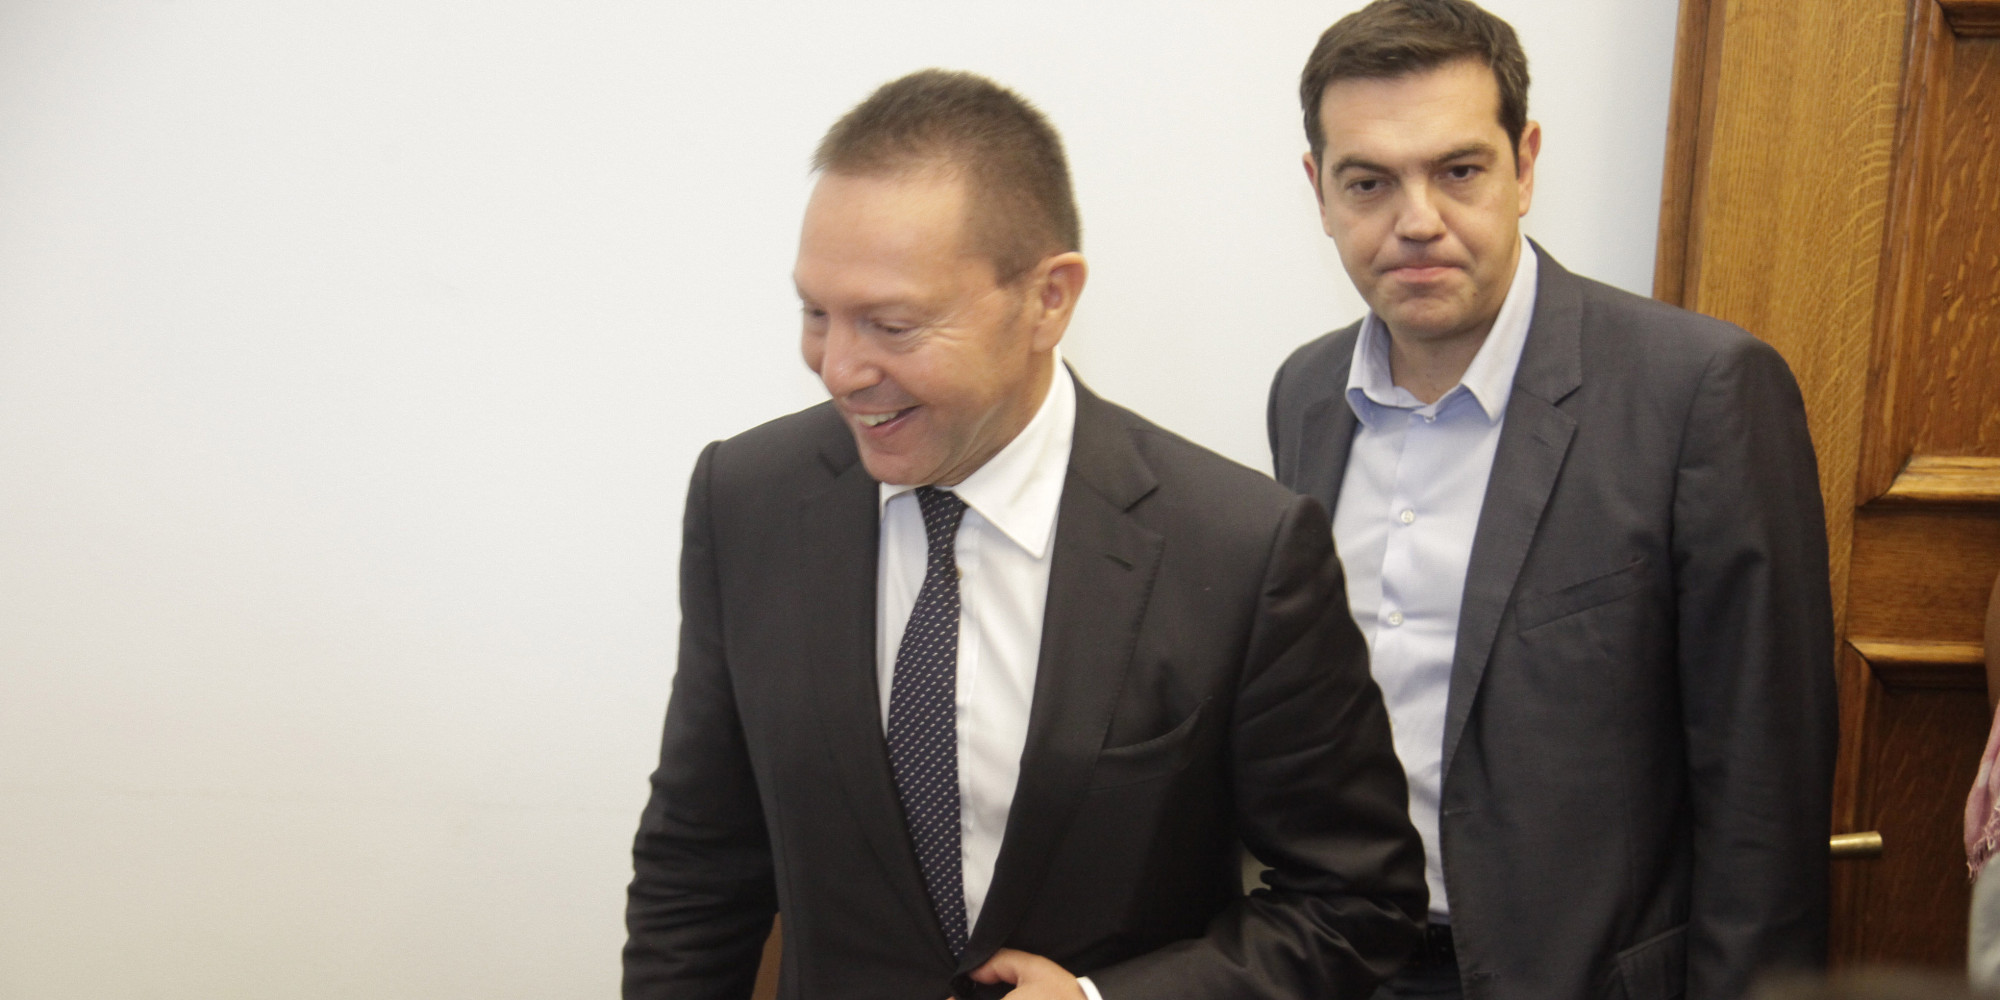 Ο Αθανάσιος Παπανδρόπουλος θεωρεί πως ο Γιάννης Στουρνάρας, Διοικητής της Τράπεζας της Ελλάδας, είναι το μεγαλύτερο εμπόδιο για τις καθεστωτικές προθέσεις της κυβέρνησης. Ο κεντρικός τραπεζίτης και η κεντρική τράπεζα είναι ο κυματοθραύστης στις όποιες αντιδημοκρατικές επιδιώξεις τους... new deal